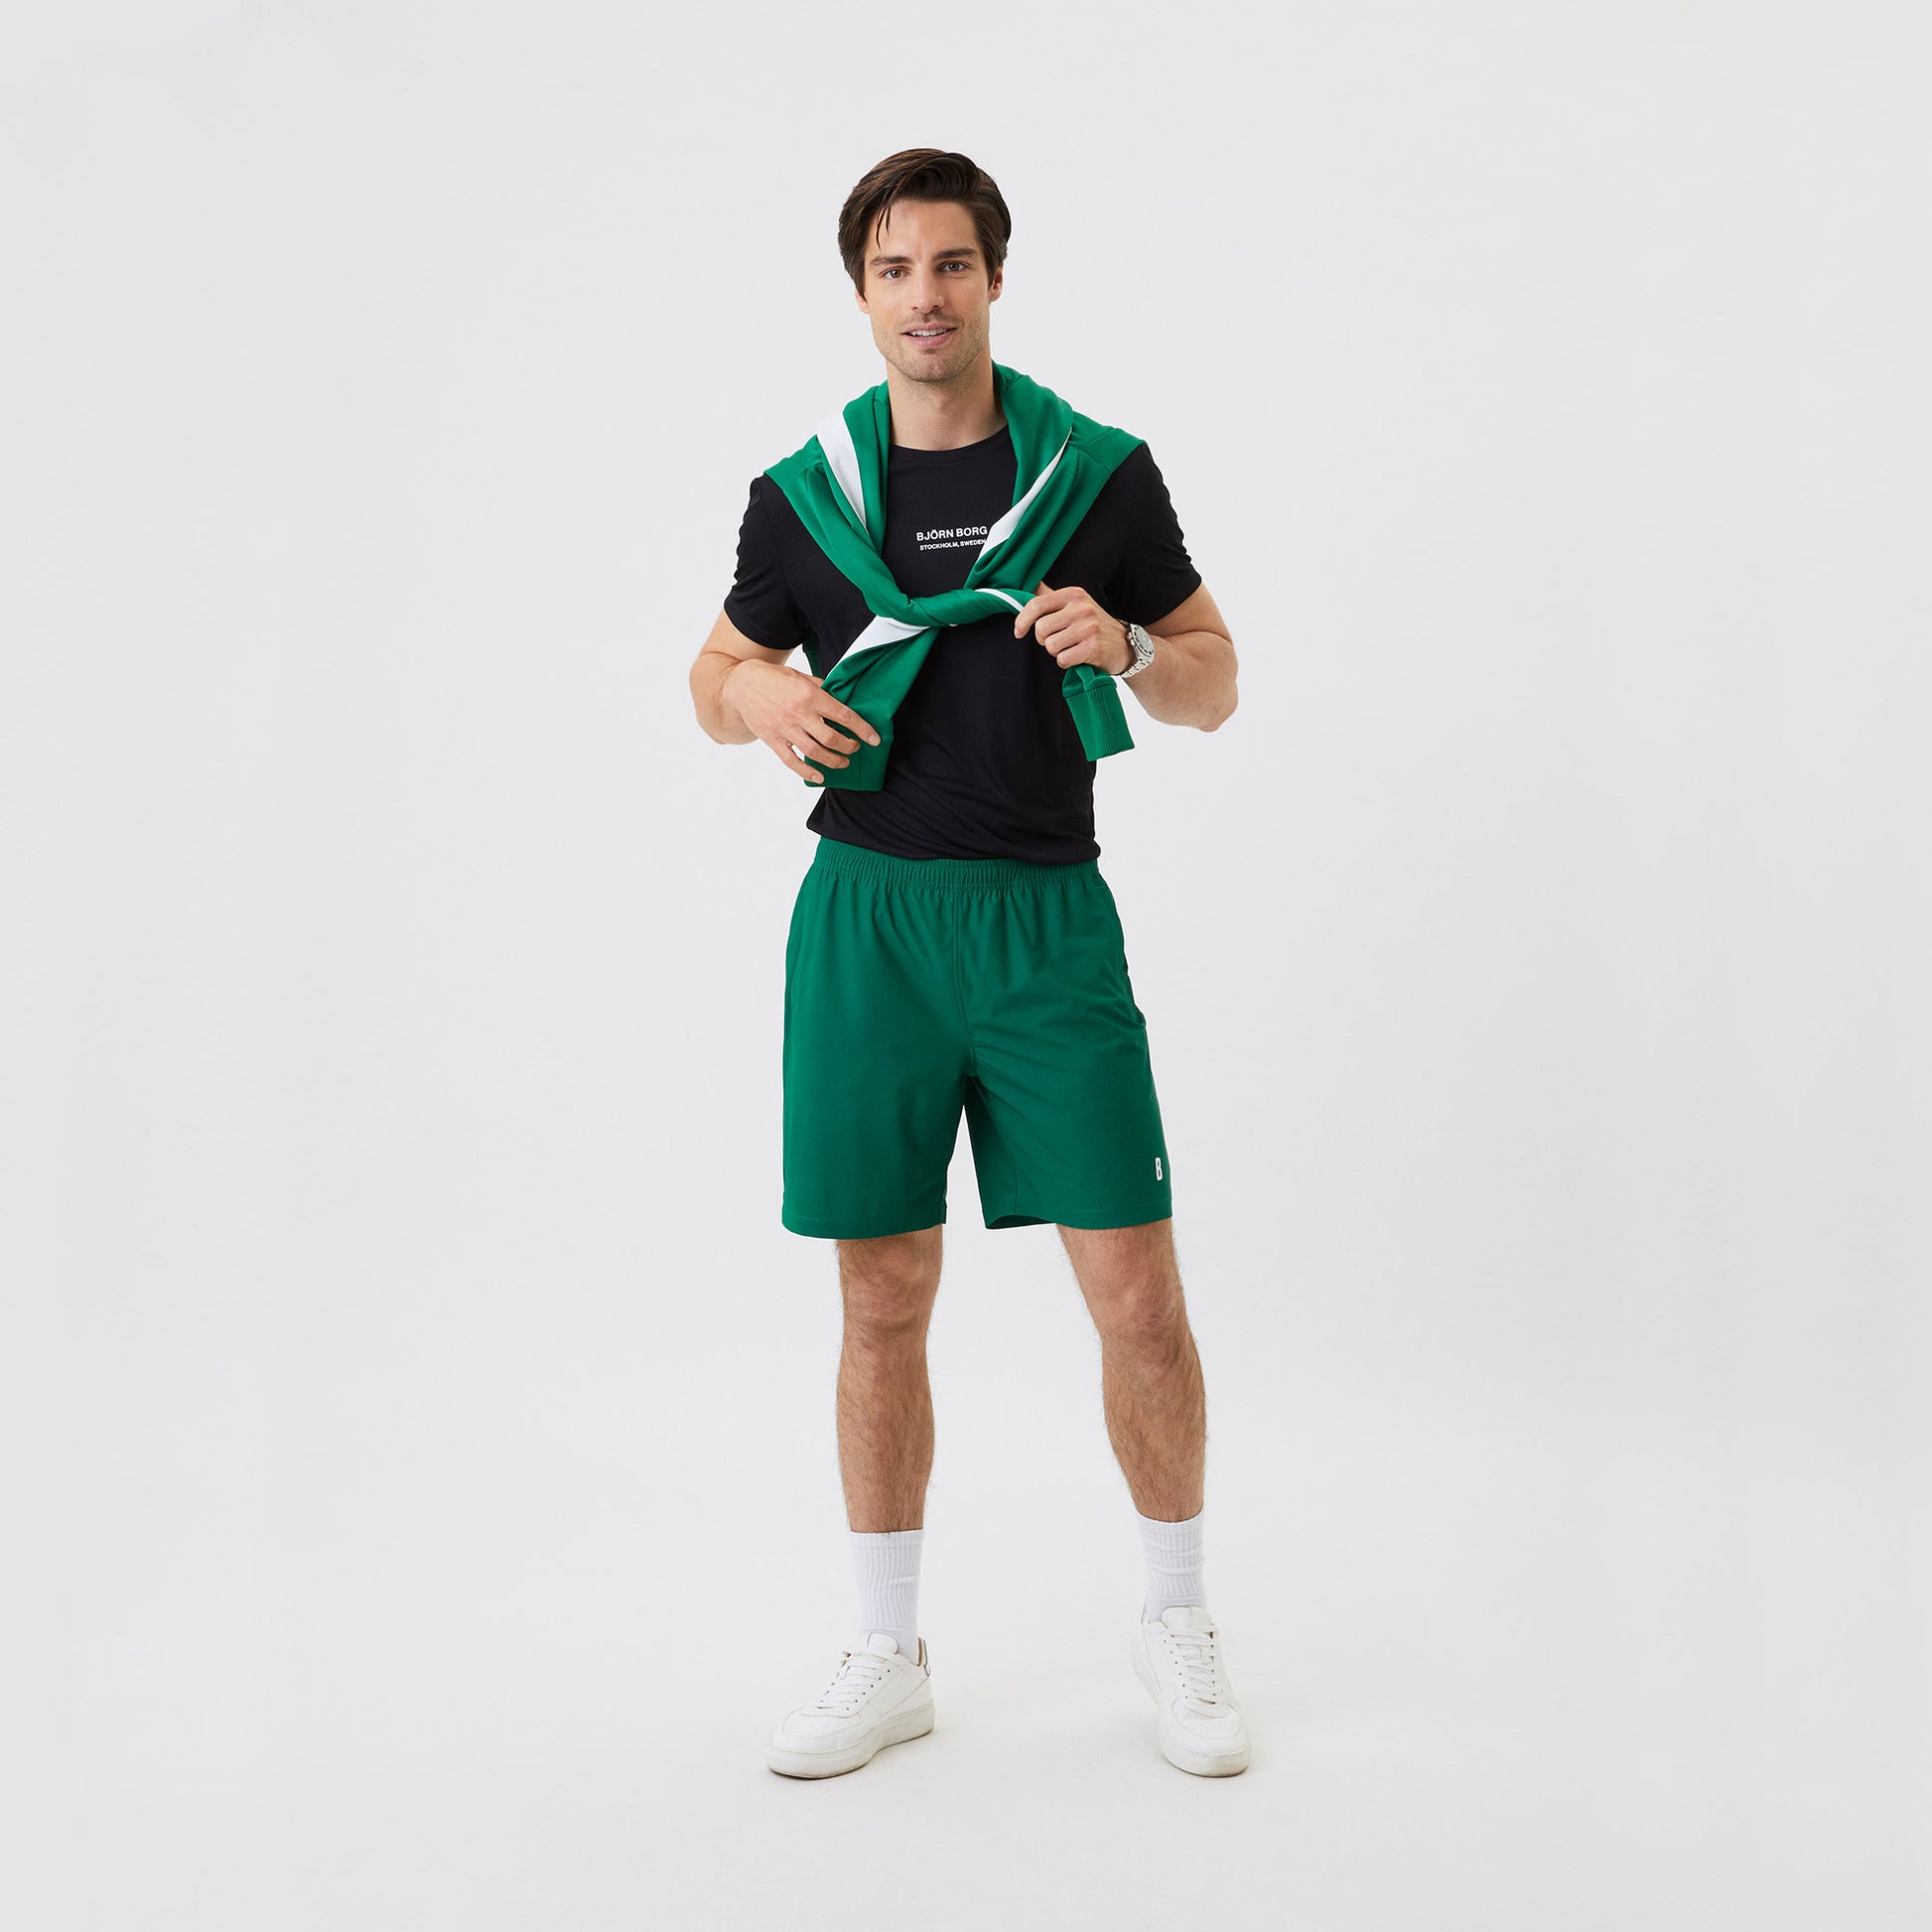 Björn Borg Ace Men's 9-Inch Tennis Shorts Green (4)